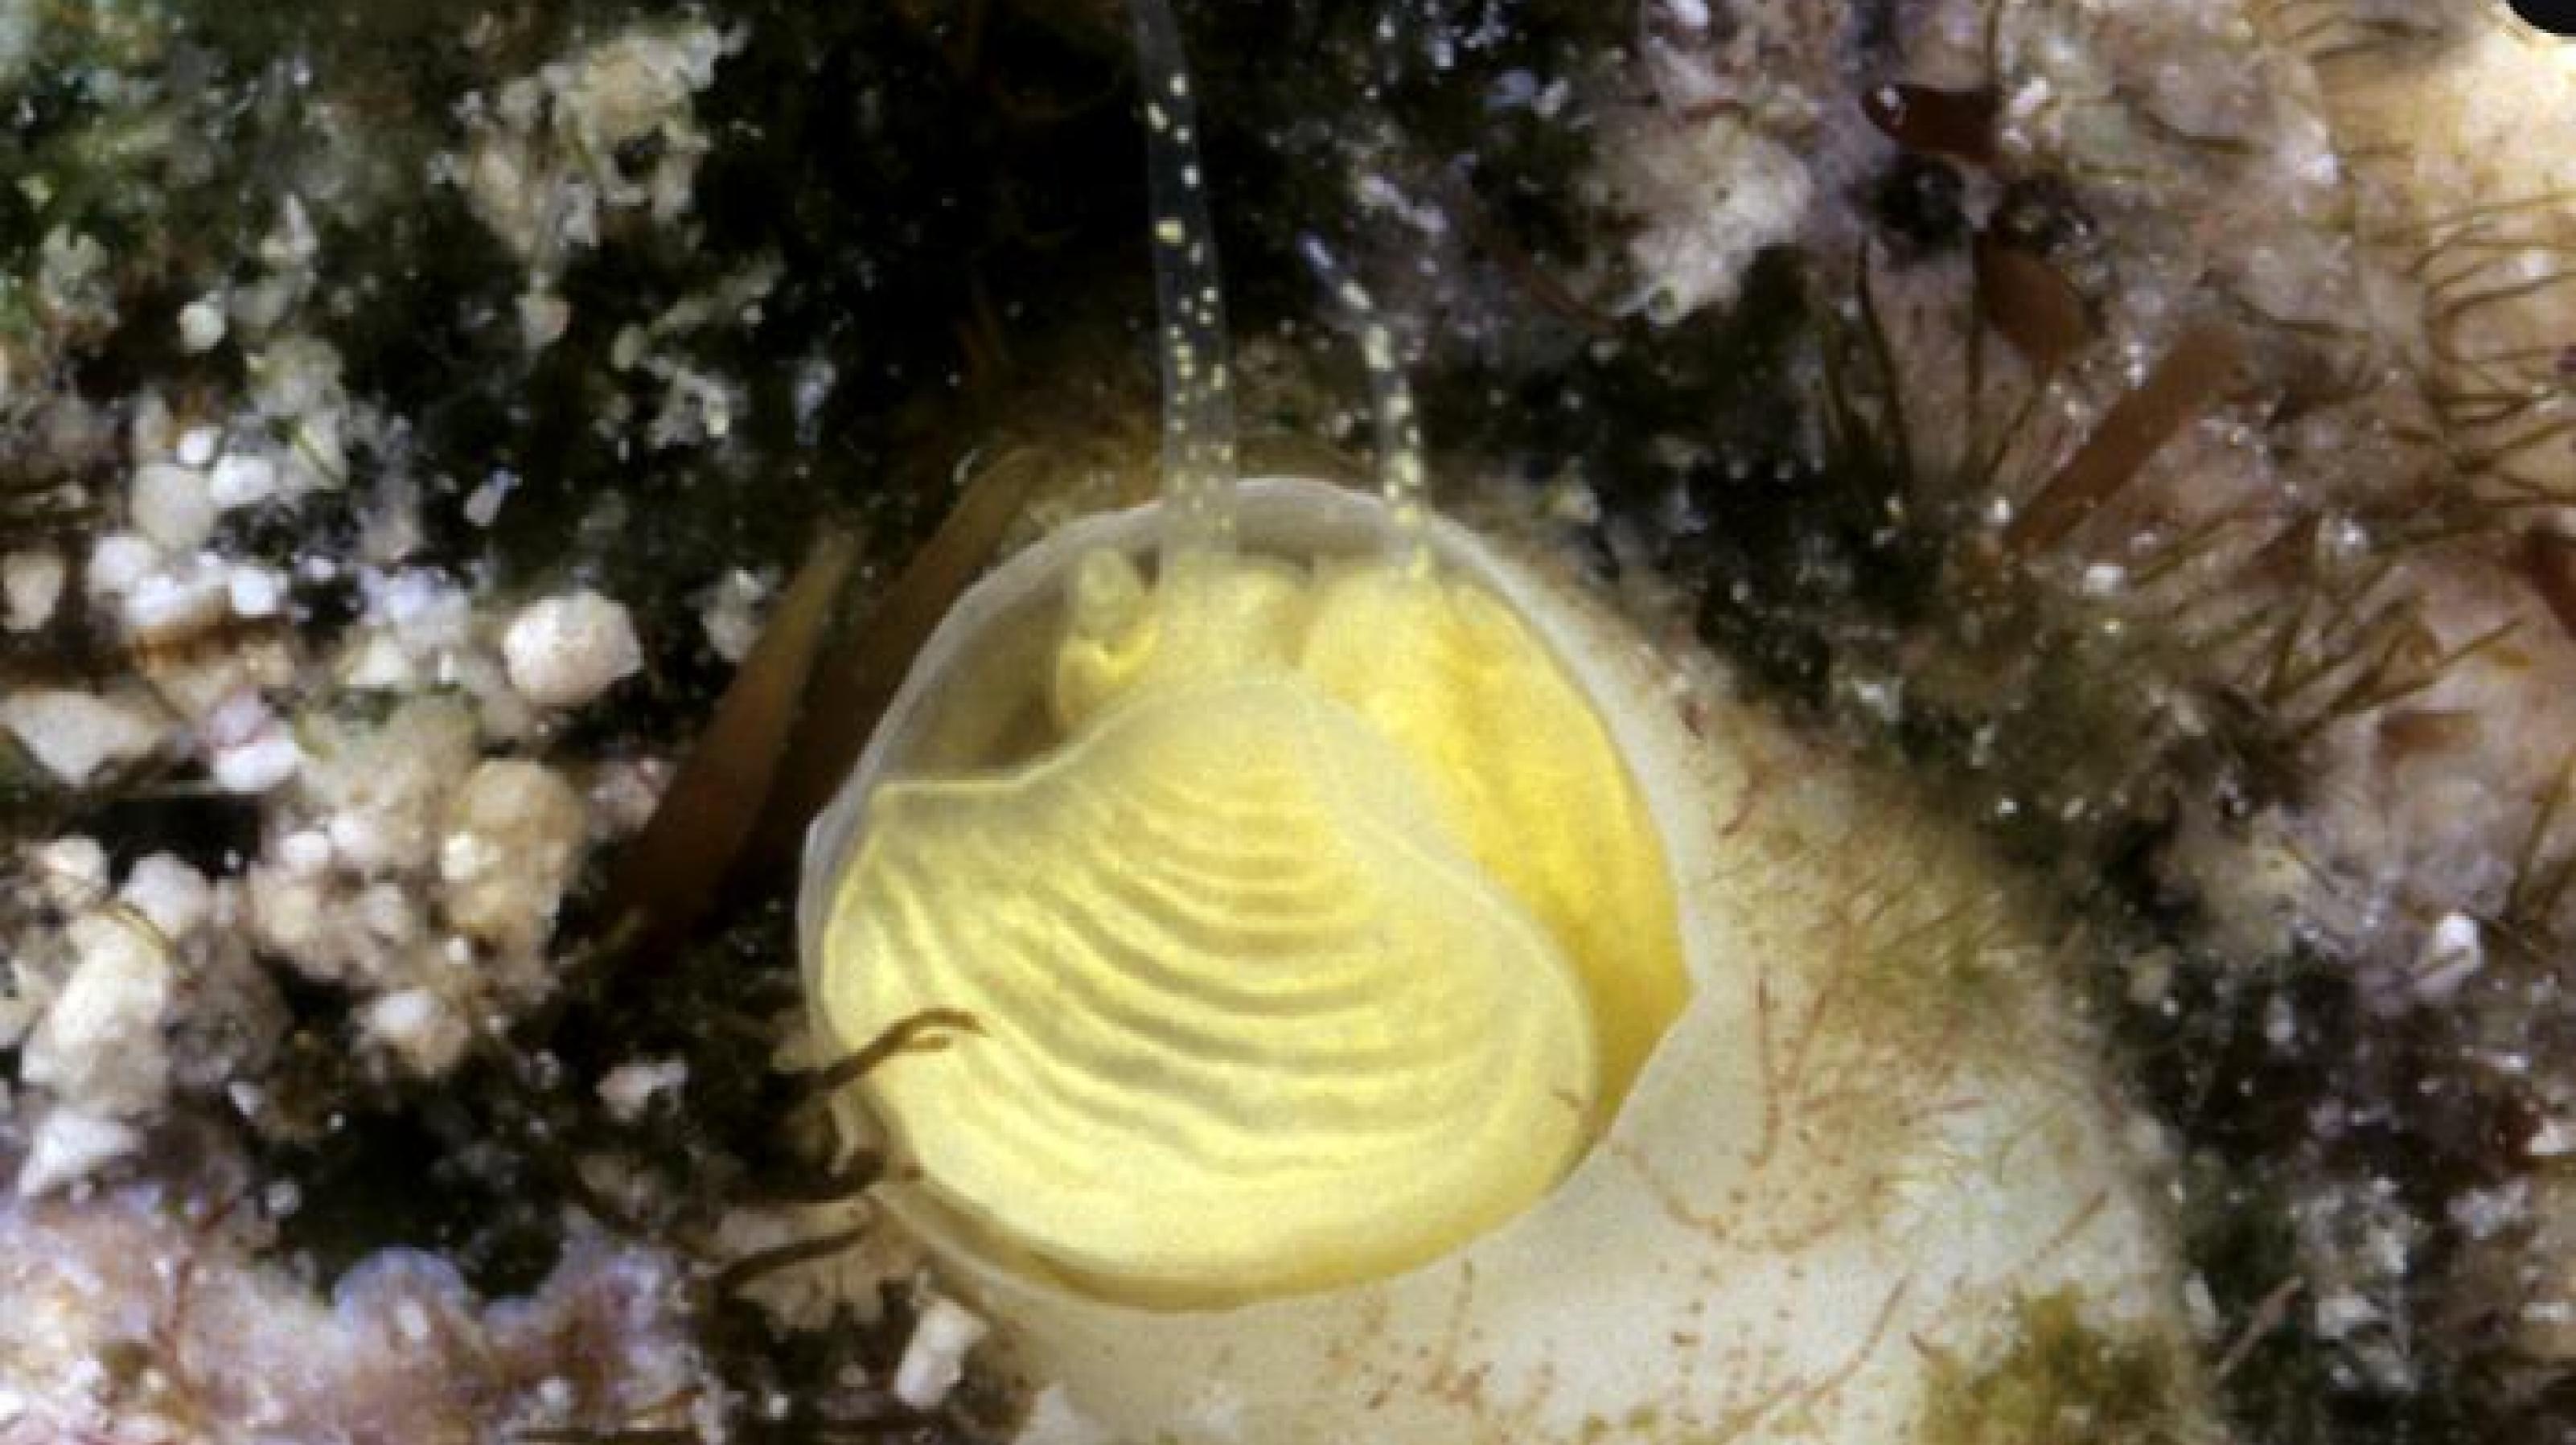 Unterwasserbild mit einer hellgelben Schnecke in einer beigen Röhre, von der nur der Kopf mit zwei Tentakel zu sehen ist.